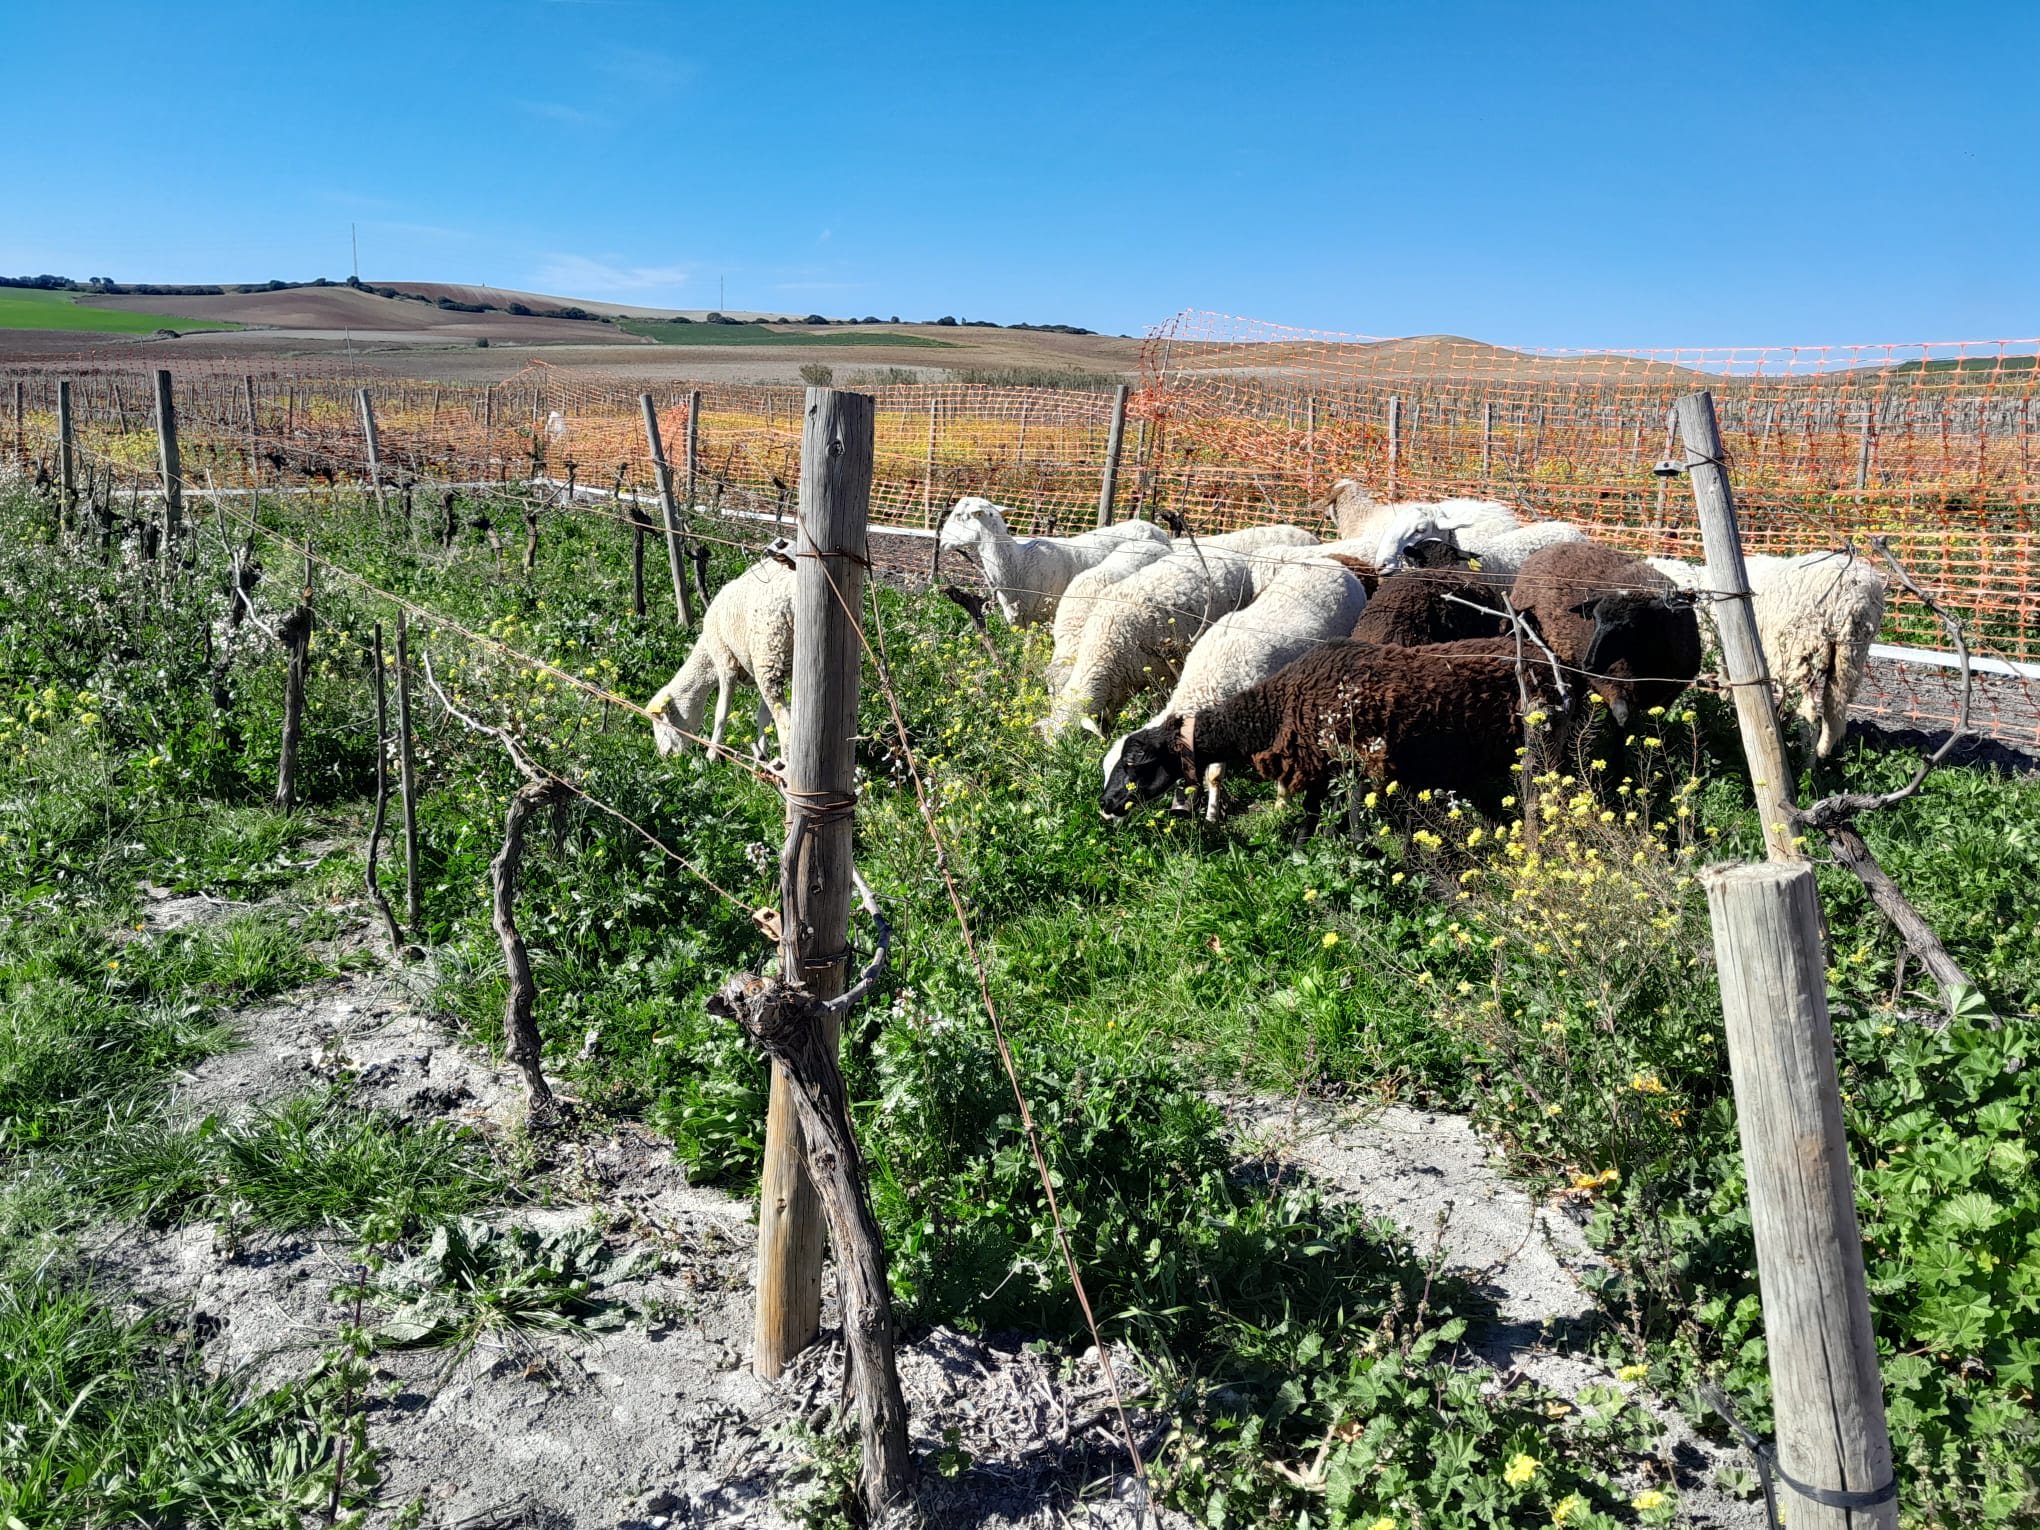 El Grupo Operativo Suelos Vivos comienza una nueva fase experimental, con la introducción de ganado ovino en las parcelas de ensayo